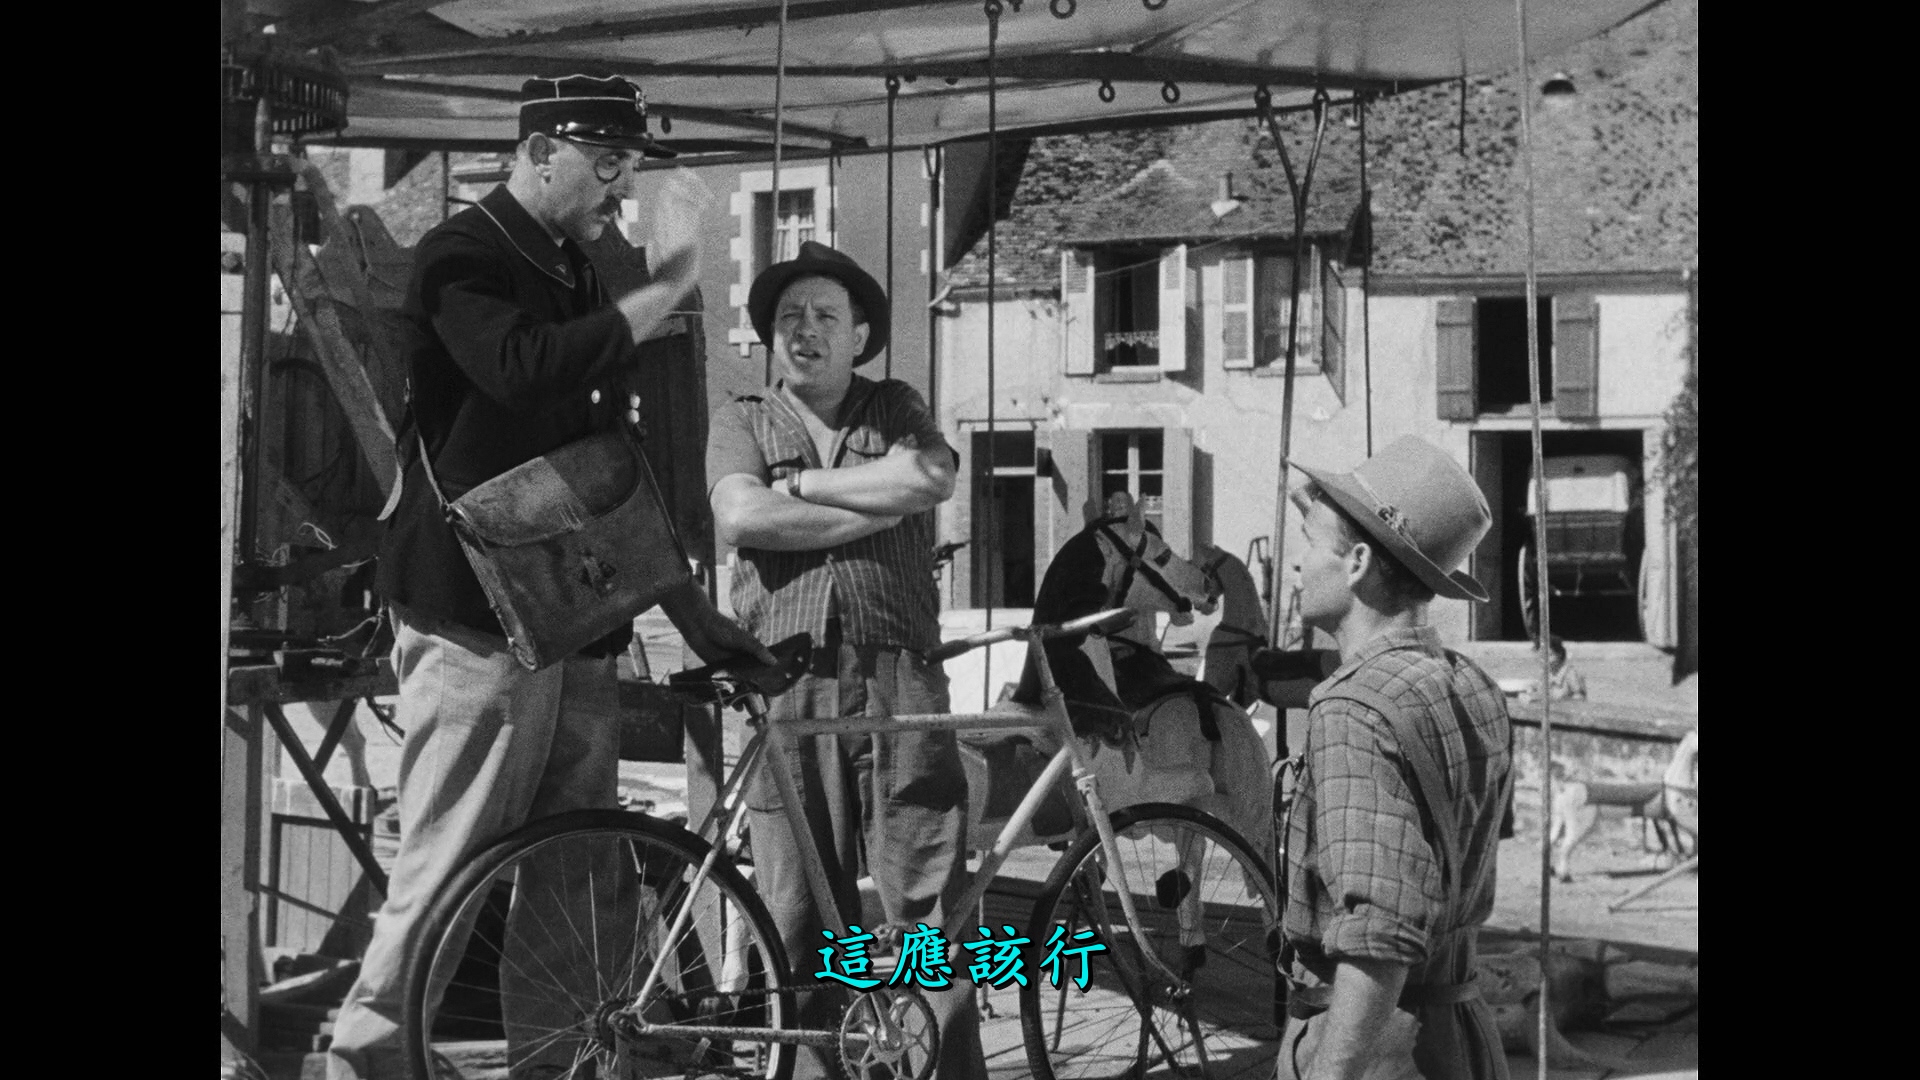 节日/Holiday[DiY简繁字幕].The.Village.Fair.1949.Criterion.Collection.Blu-ray.1080p.AVC.LPCM.1.0-DiY@TAG 46.55GB-9.jpg